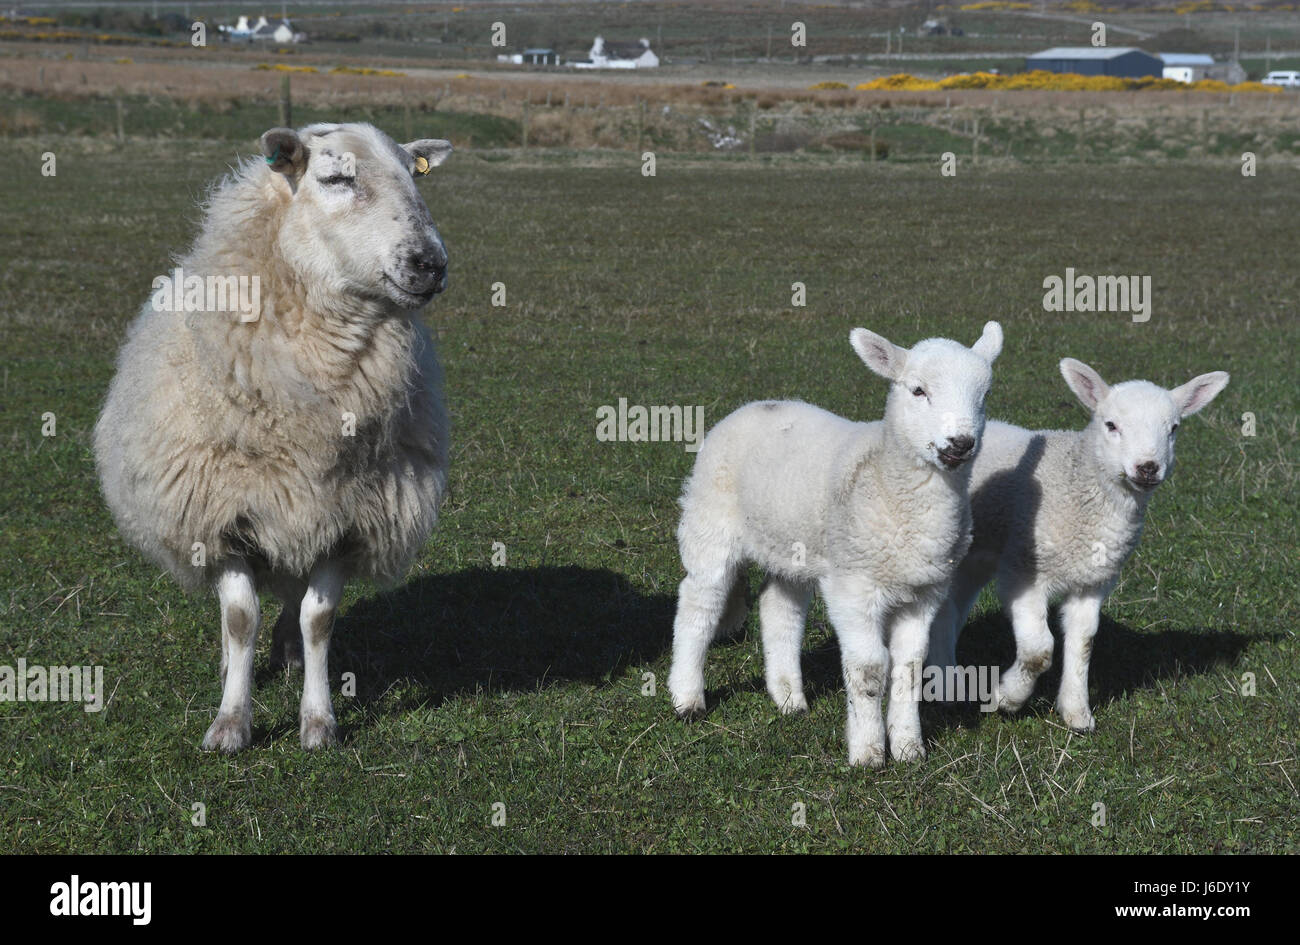 Schafe Lämmer Familie; Schafe, Ovis; Inland; Forse; Caithness; Schottland  Stockfotografie - Alamy